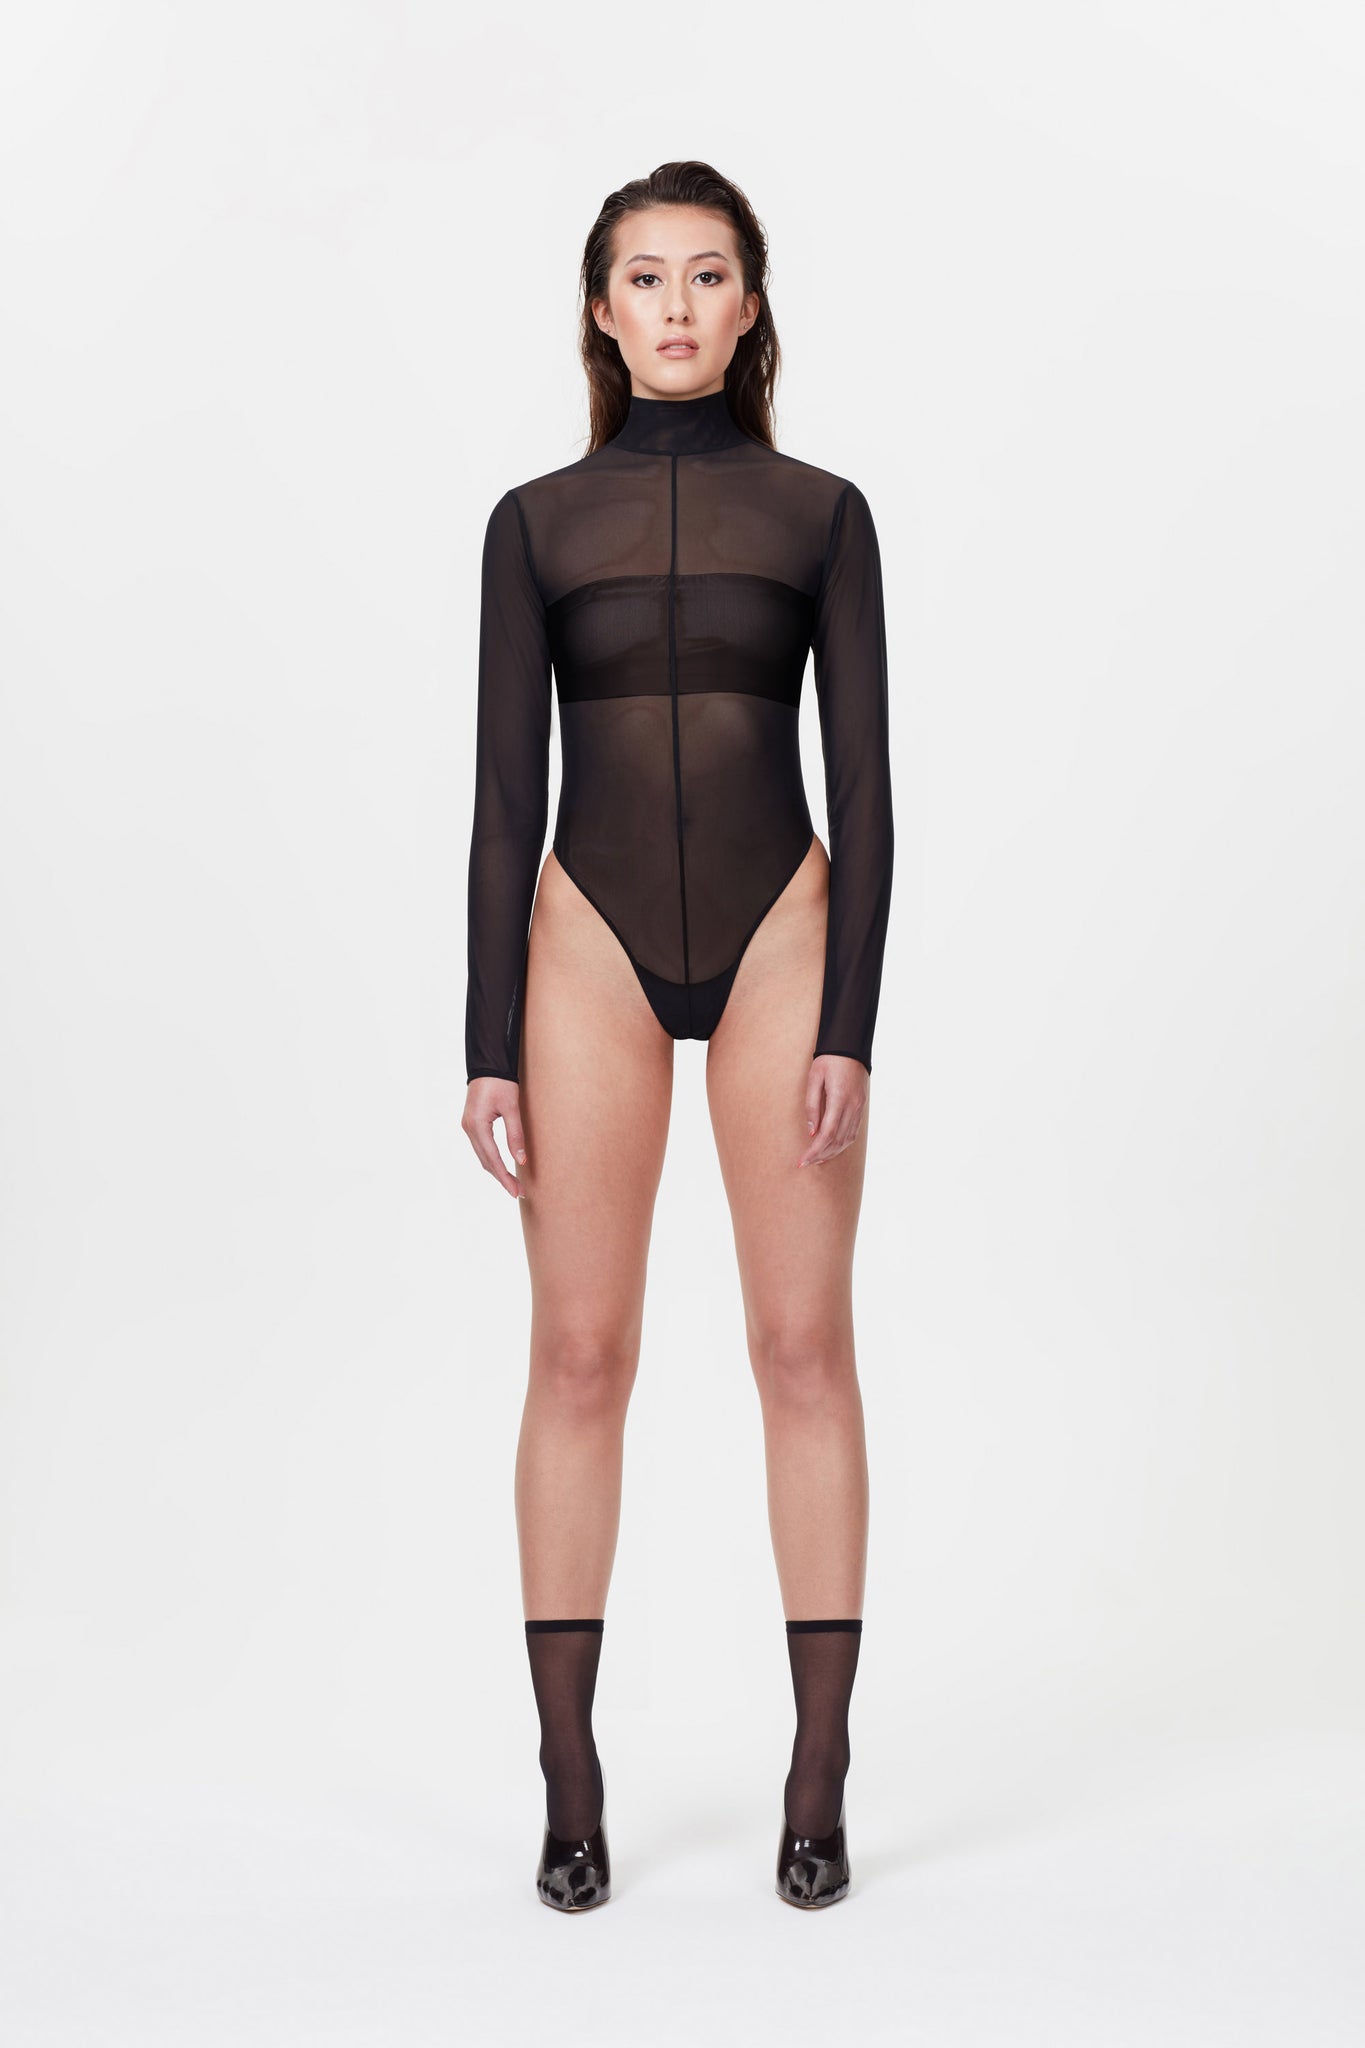 Selene / The Bodysuit